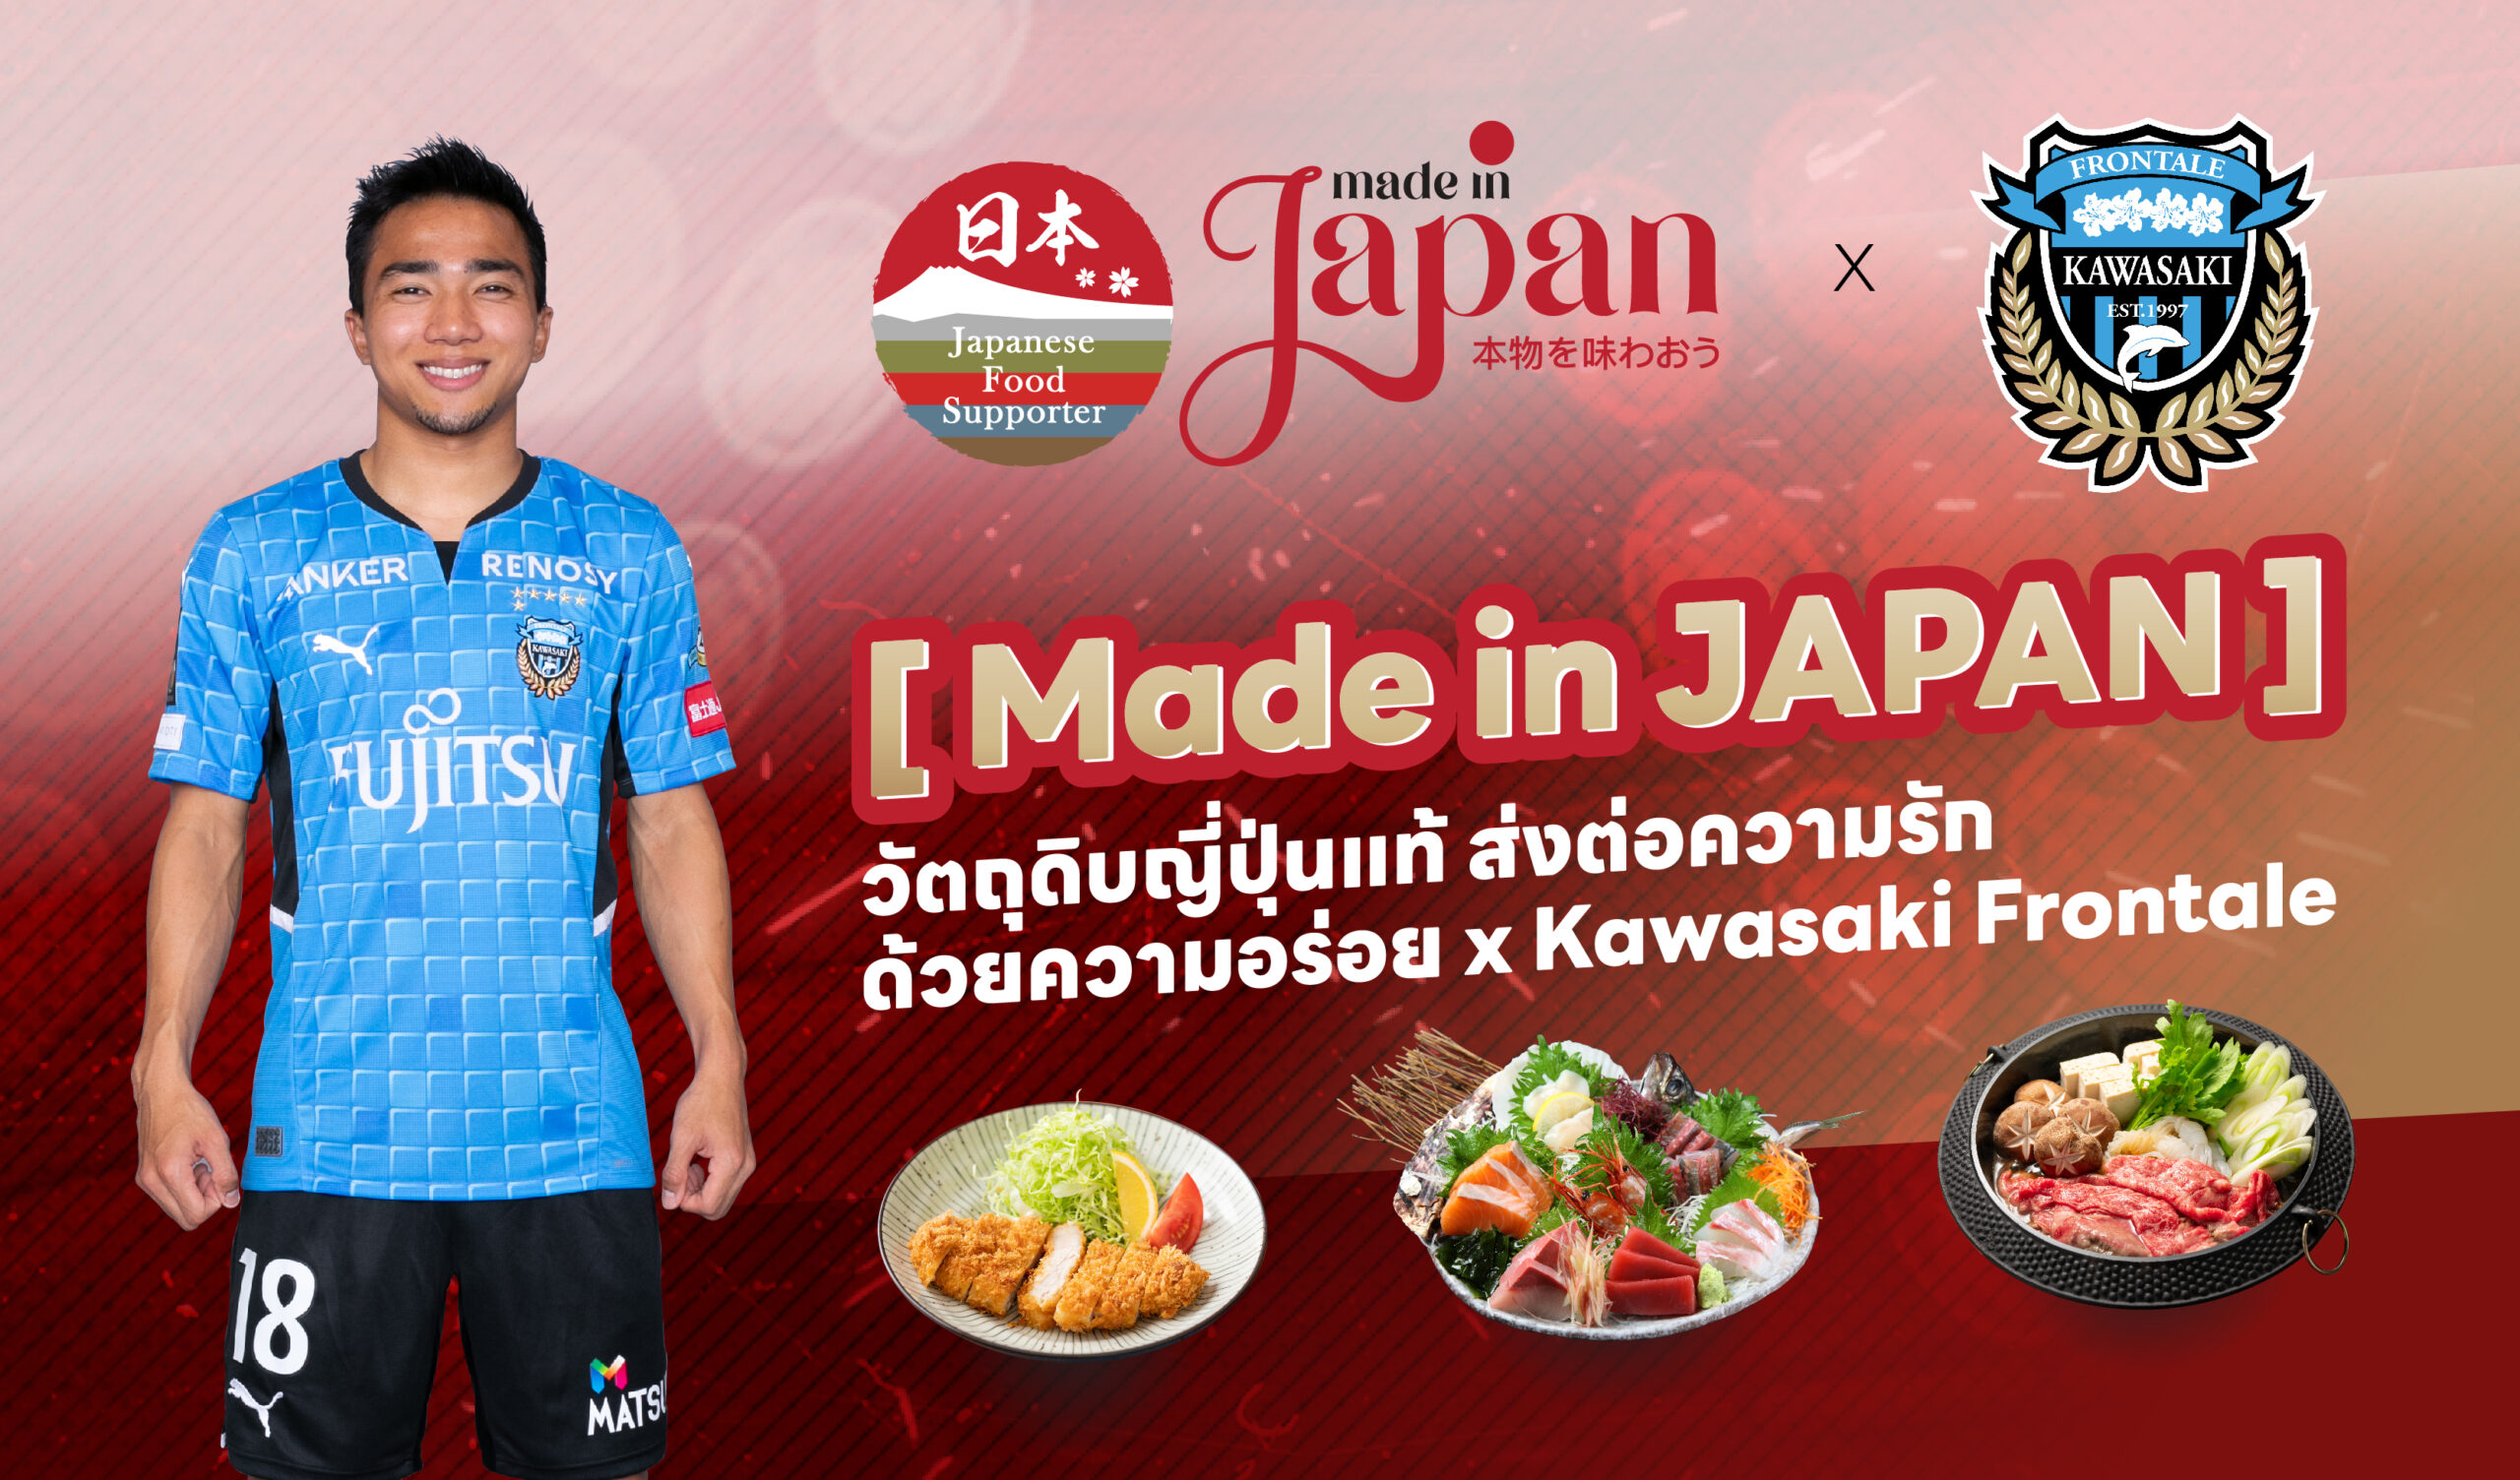 กิจกรรม [ Made in JAPAN ] วัตถุดิบญี่ปุ่นแท้ ส่งต่อความรัก ด้วยความอร่อย x Kawasaki Frontaleのメイン画像